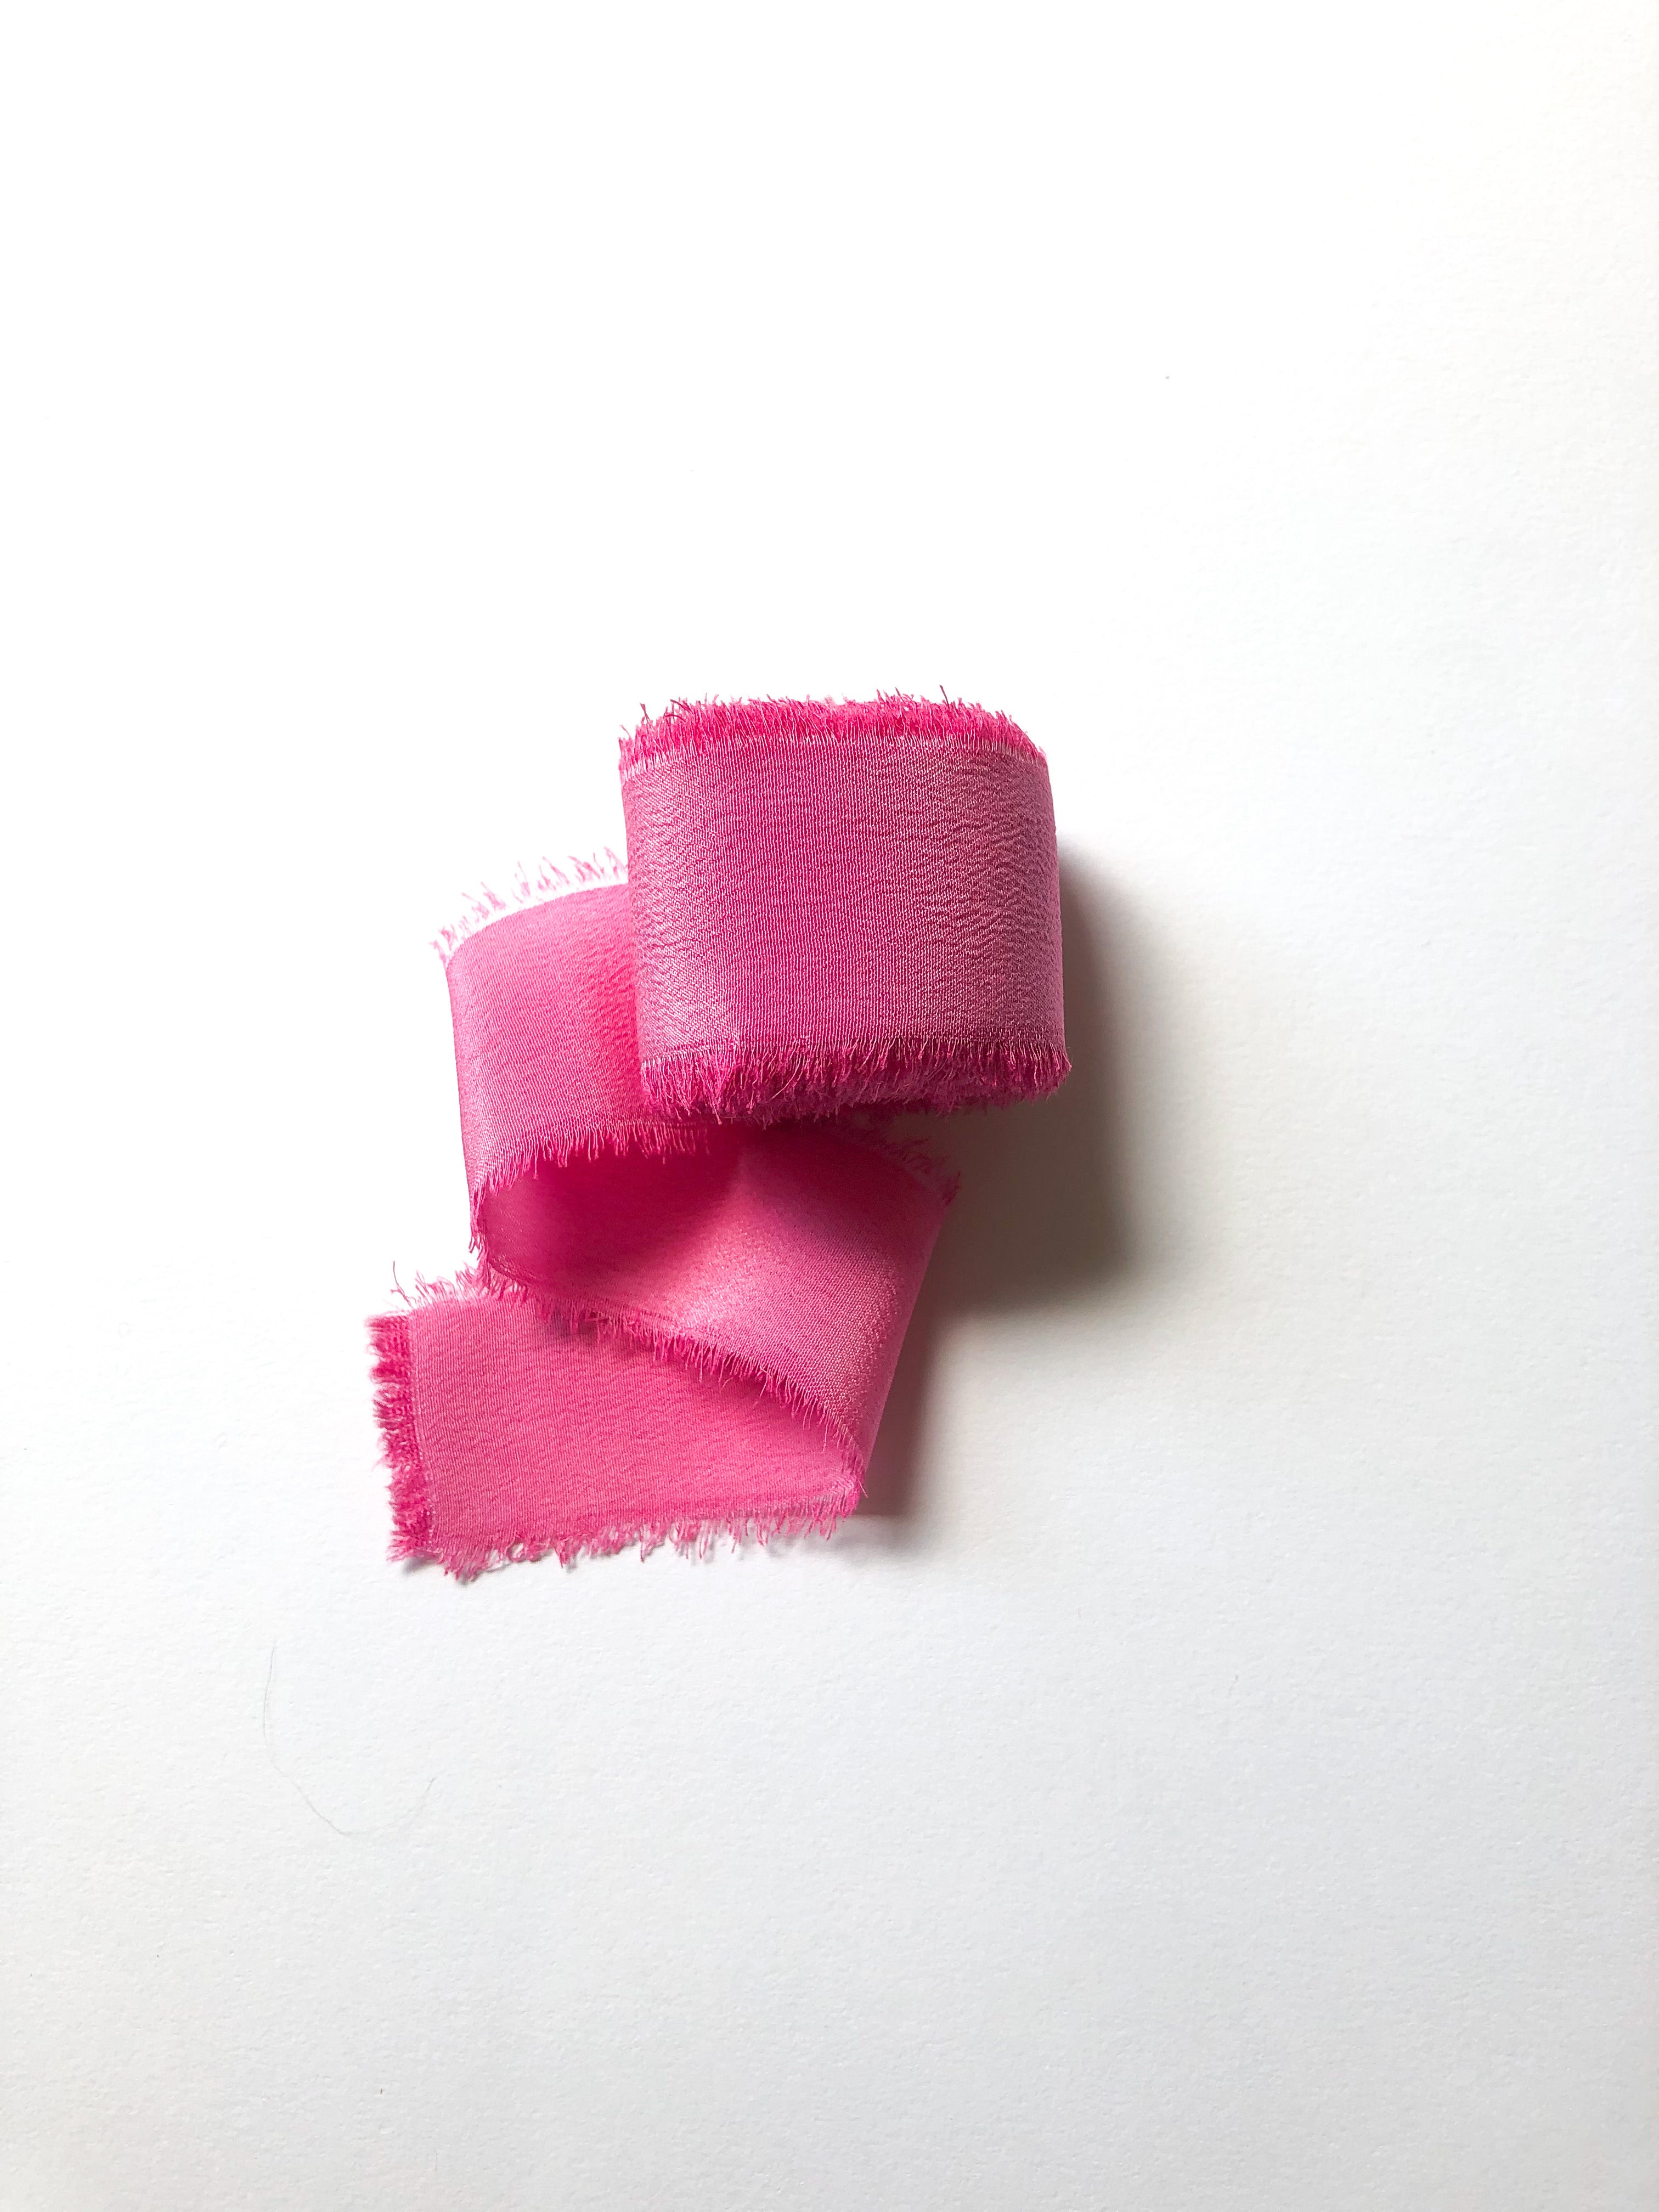 Silk Ribbon in Parisian Pink – Storybook Silk